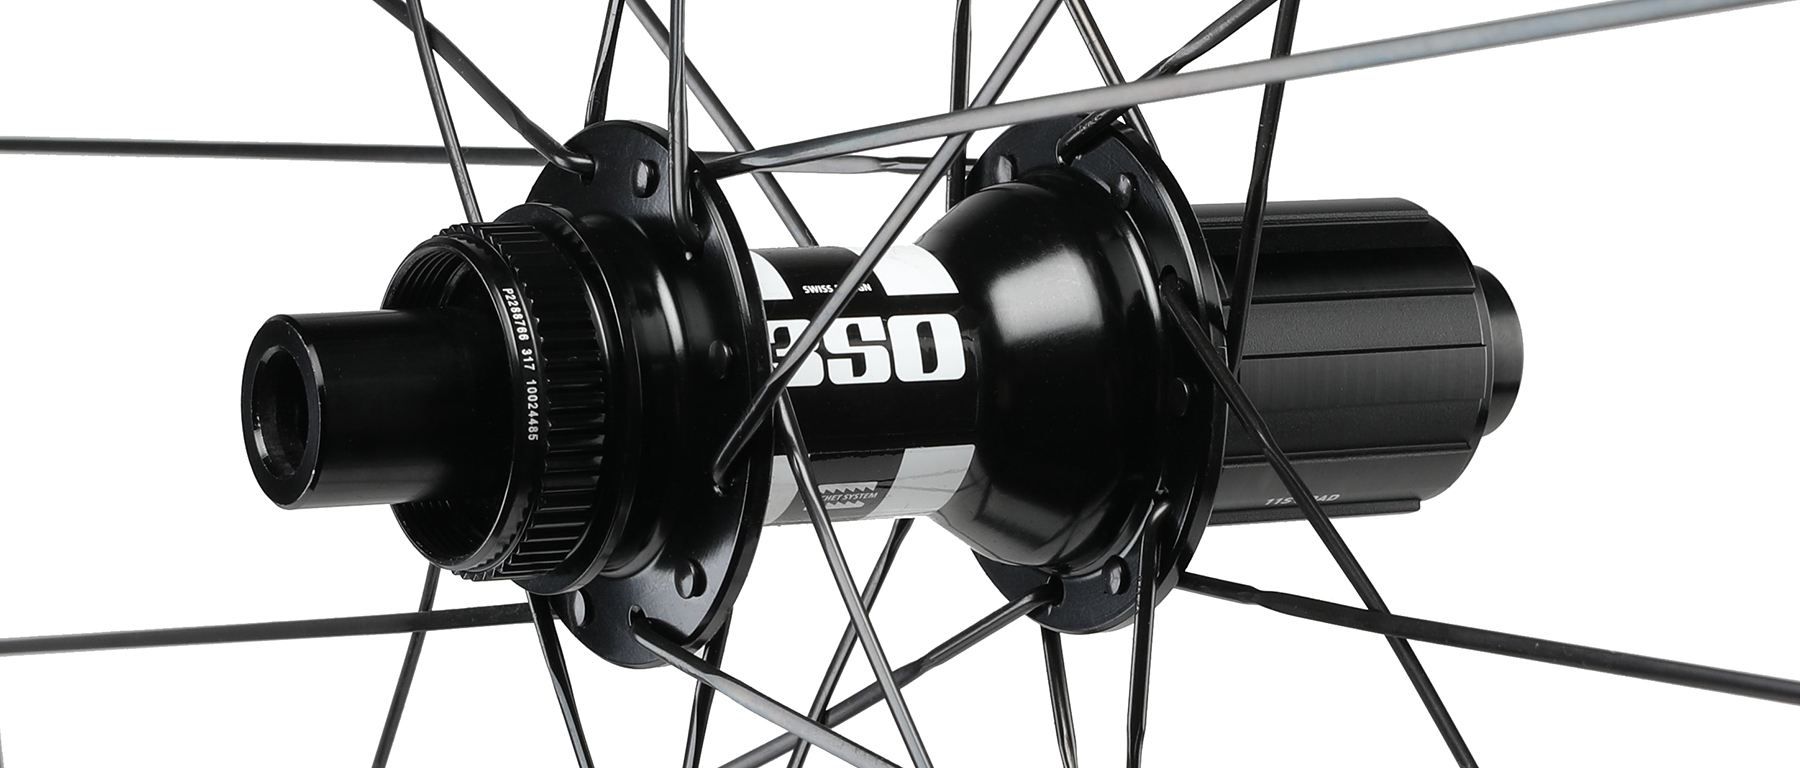 Reserve 25|GR DT 350 650b Carbon Wheelset